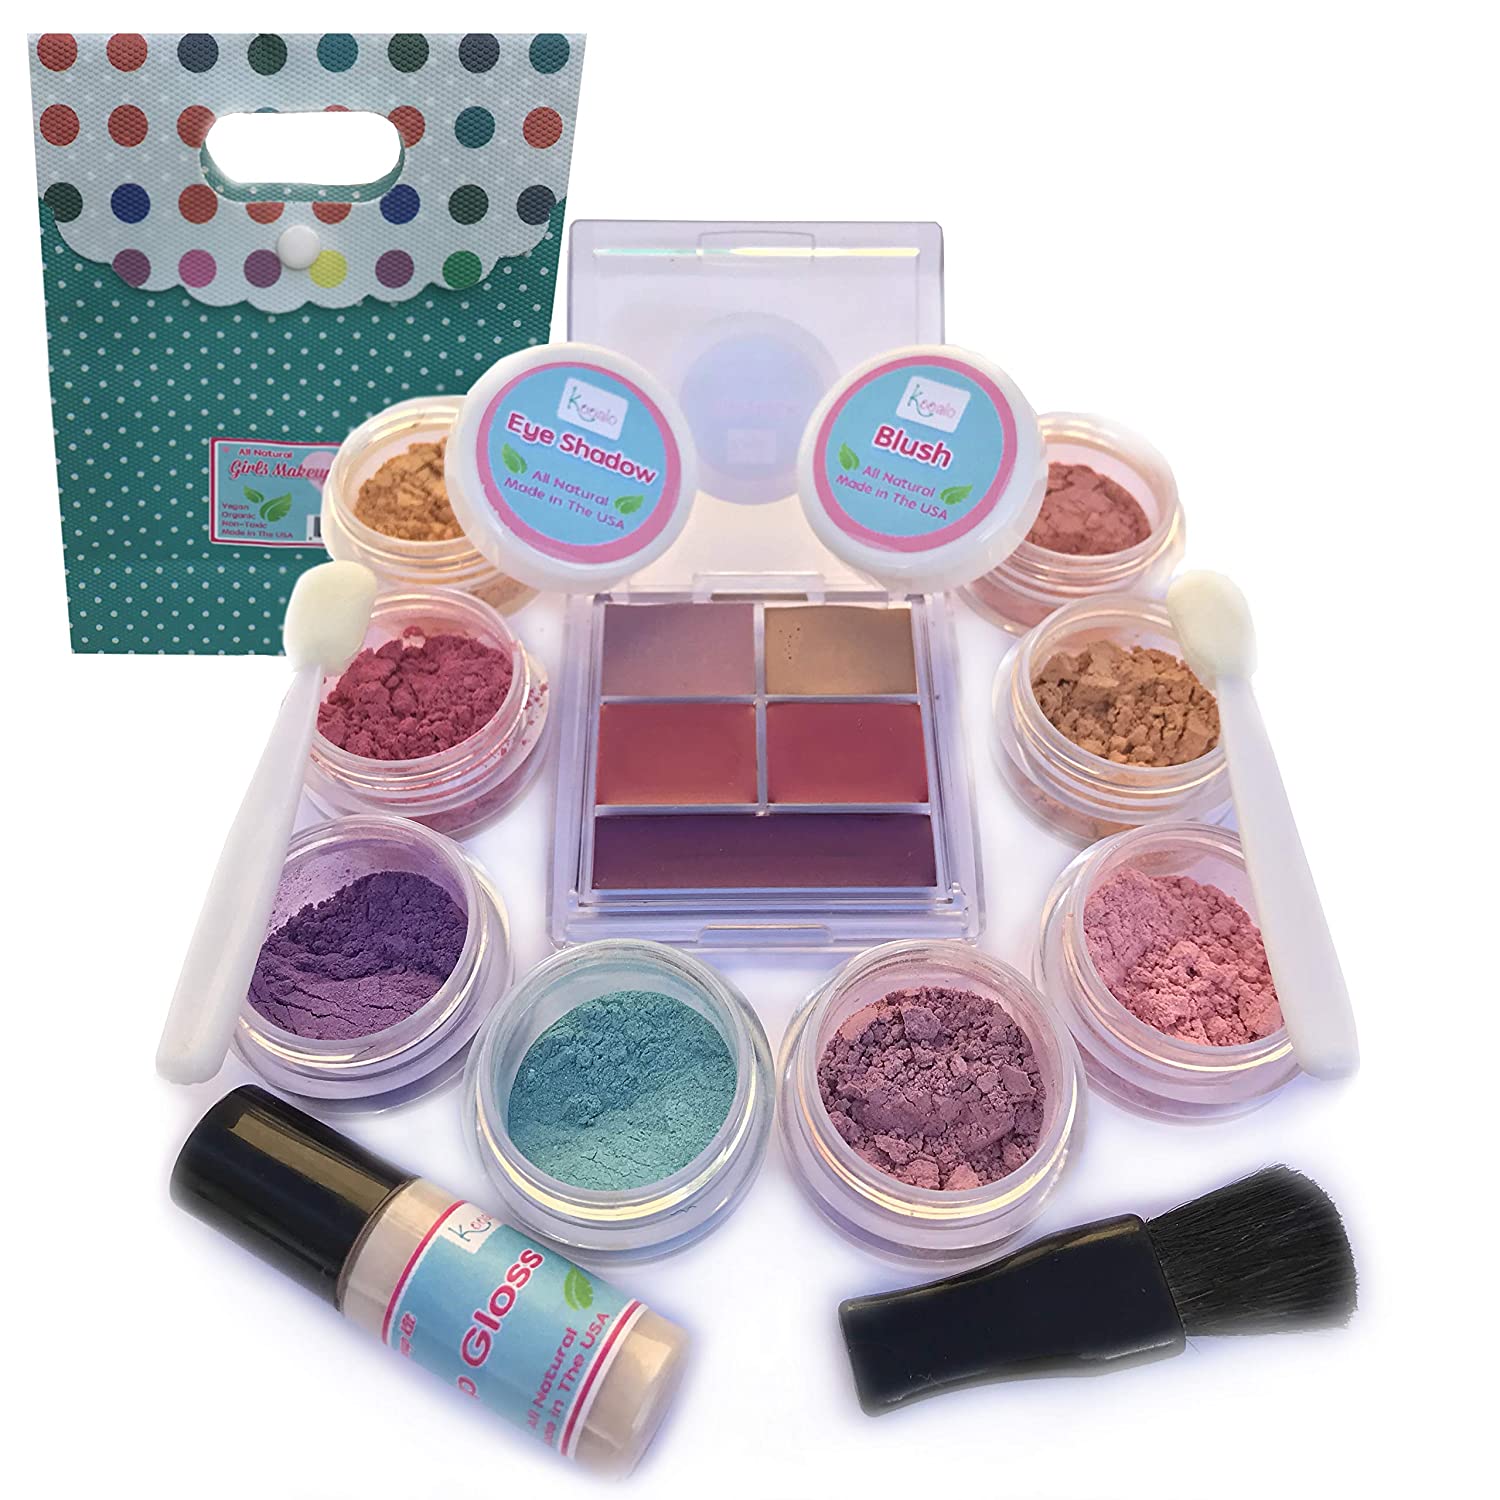 Kooalo Natural Makeup Kit -Best Makeup Kits for Kids